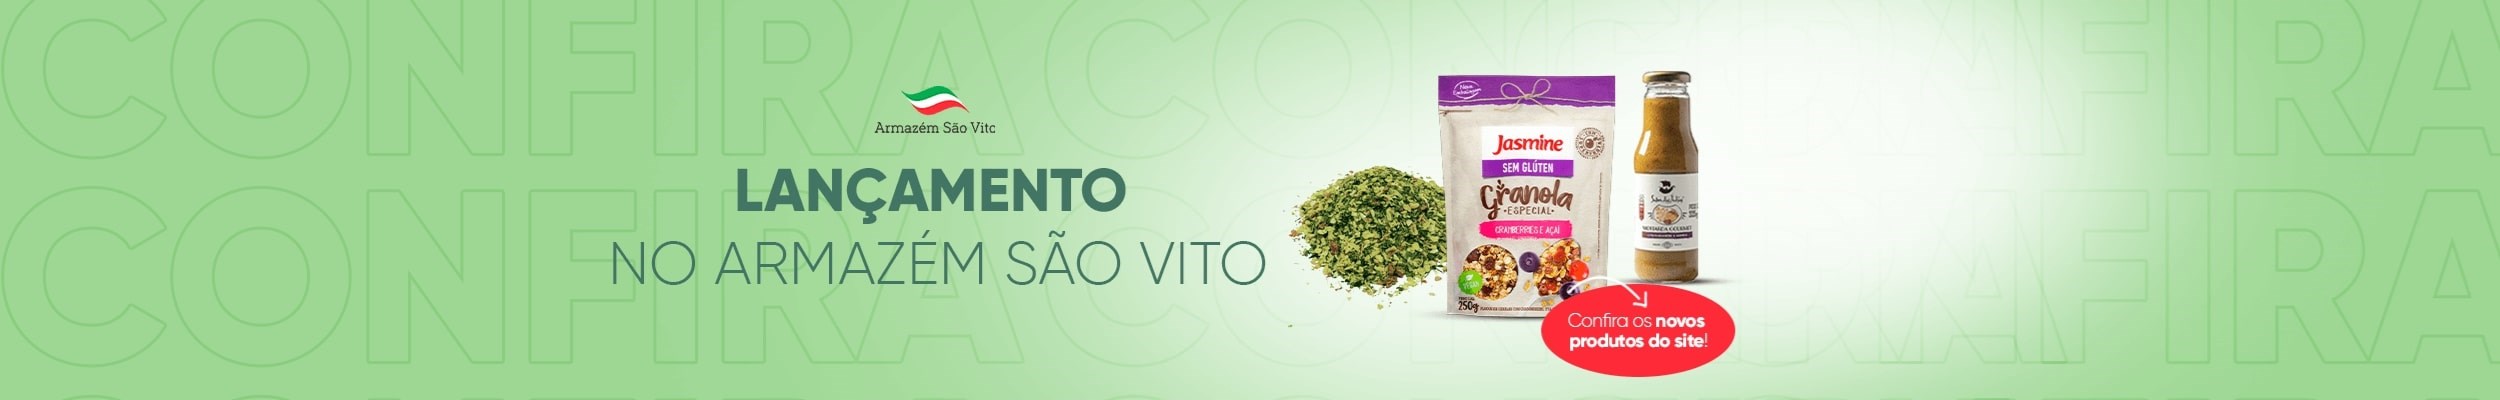 Lançamento de produtos - São Vito 